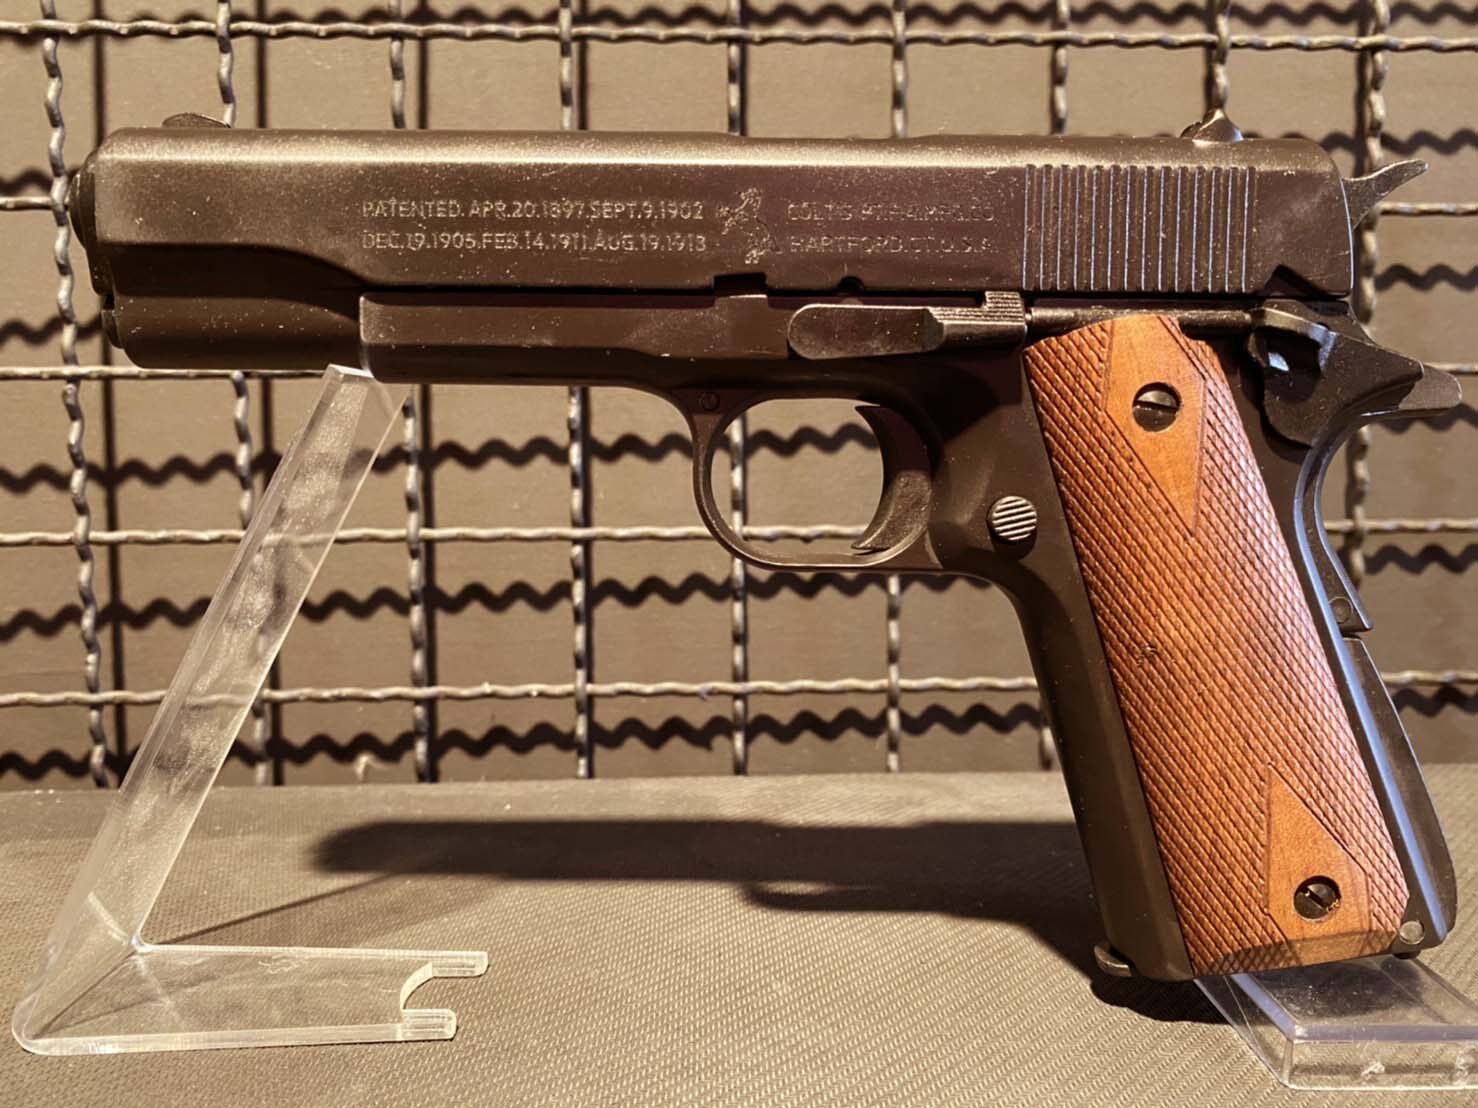 Blank Colt M1911  9 Mm Pak รุ่นดั้งเดิมต้นฉบับในตำนาน M1911 Full Marking ด้ามไม้แท้ เซฟหลังอ่อนใช้งานได้จริง สีดำด้าน สวย ดุ ดิบ Made In Turkey. 